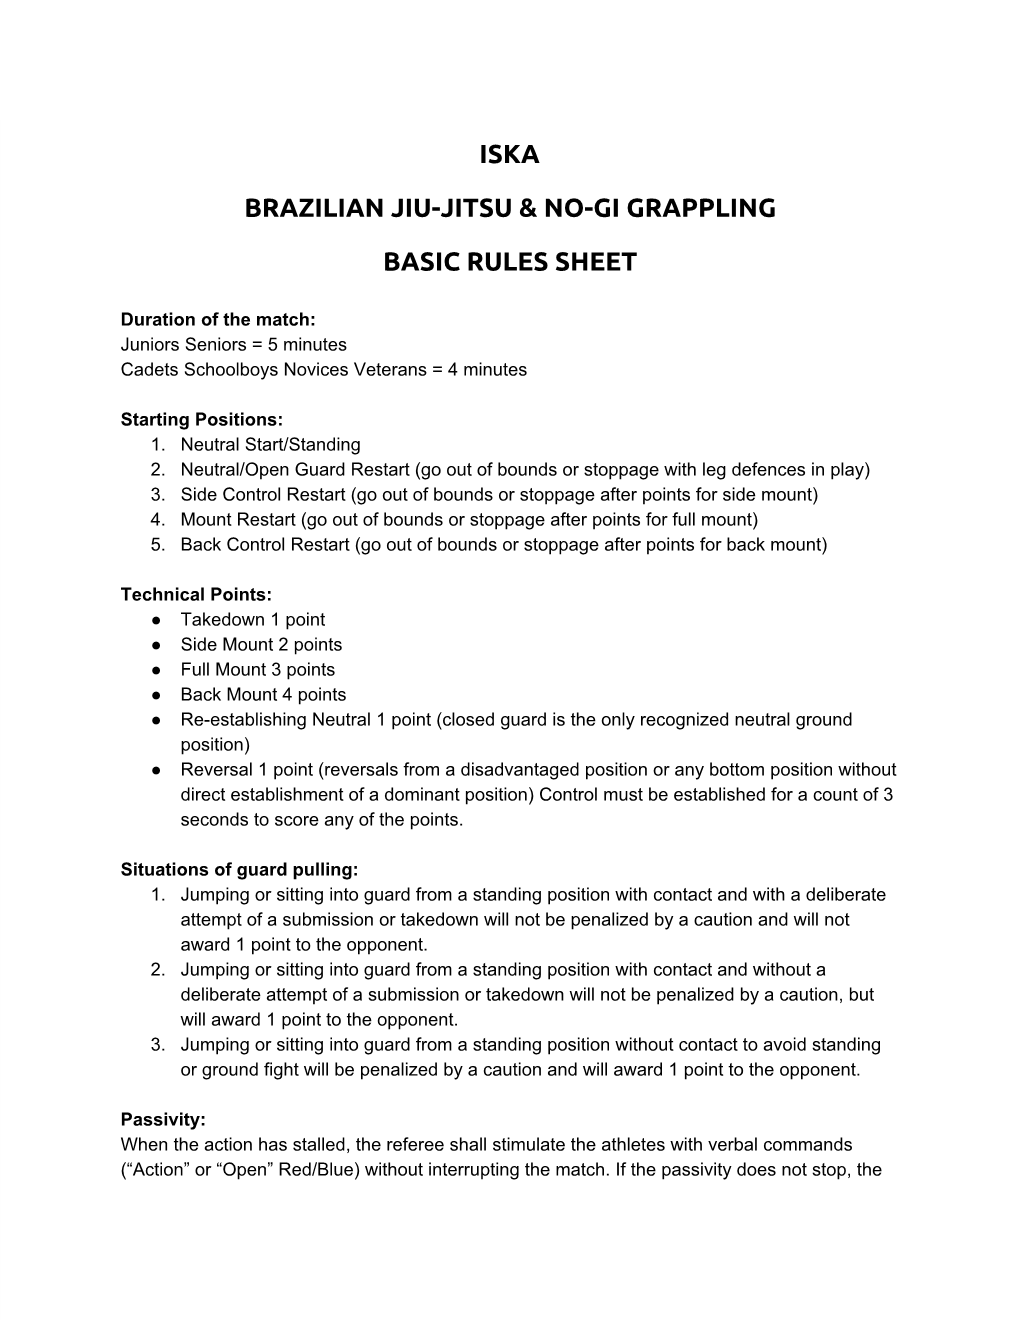 Iska Brazilian Jiu-Jitsu & No-Gi Grappling Basic Rules Sheet